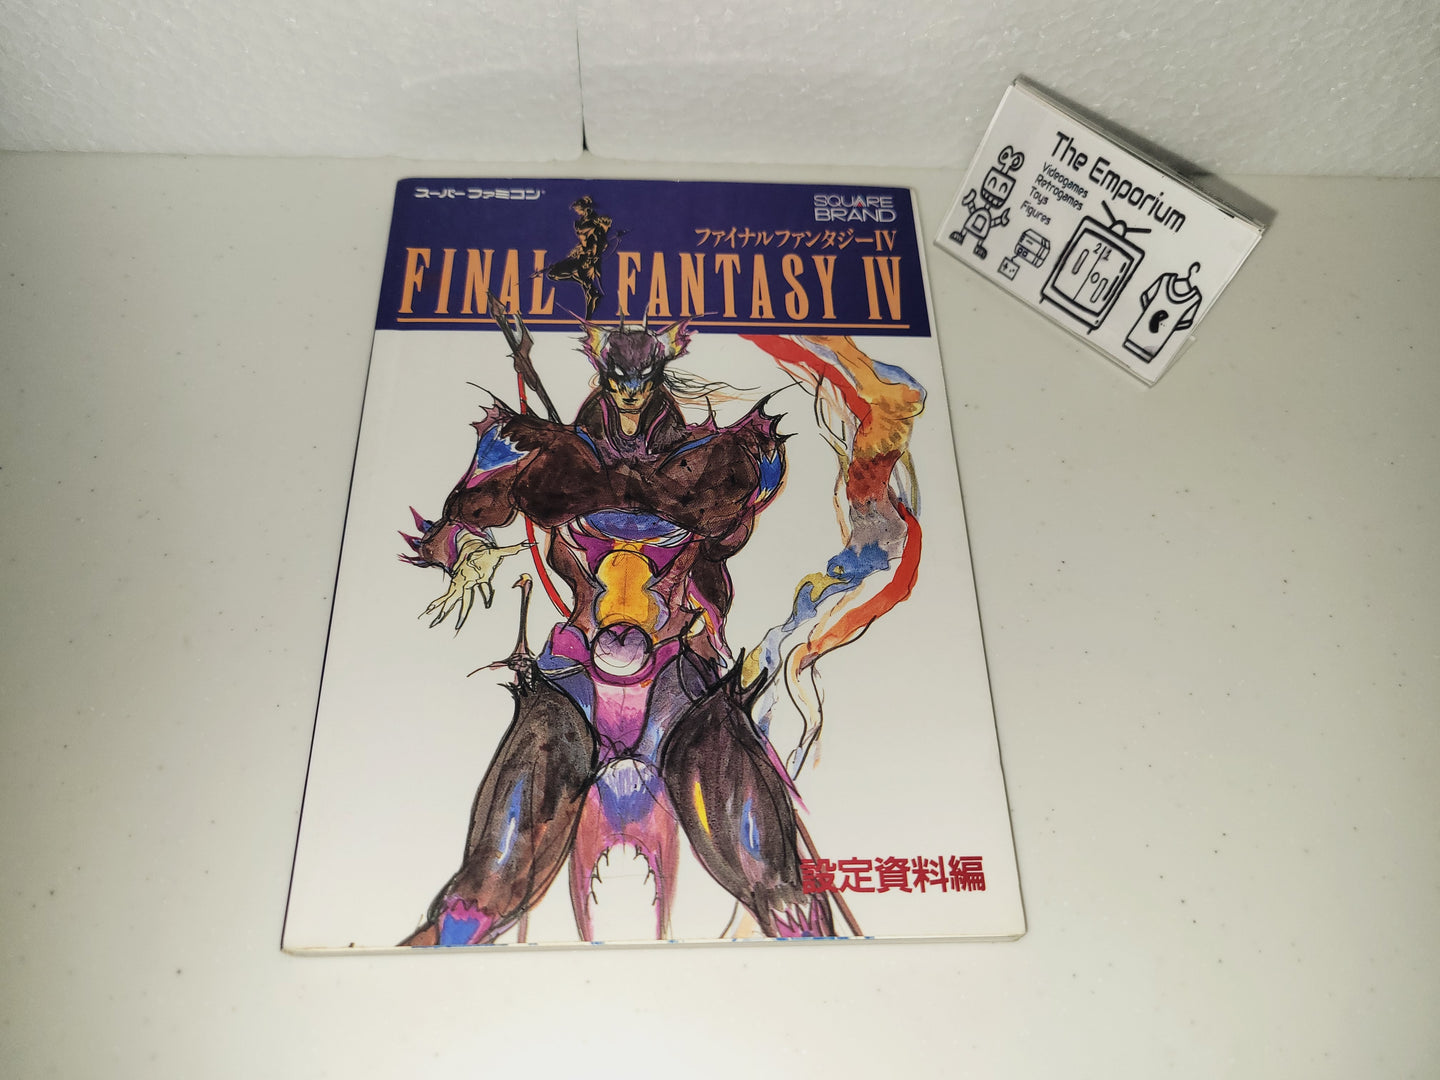 michela - Final Fantasy VI guidebook  - book